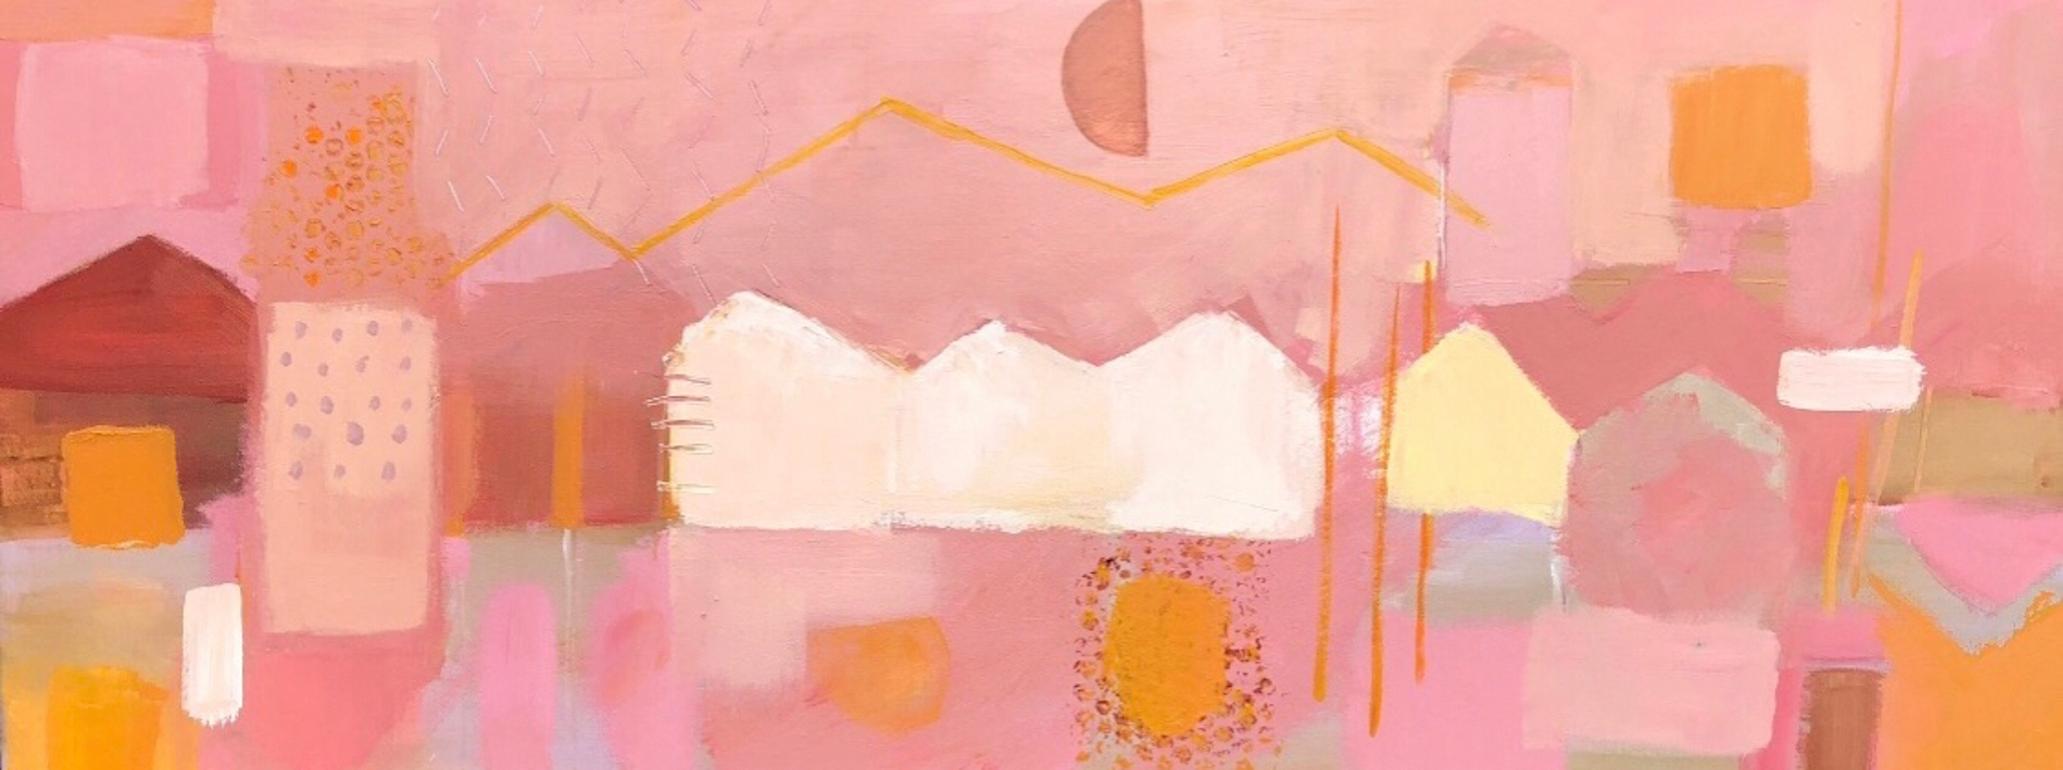 Maggie LaPorte Banks Landscape Painting - Bergen facades 5, Norway Original Painting, Landscape, Contemporary, Pink art